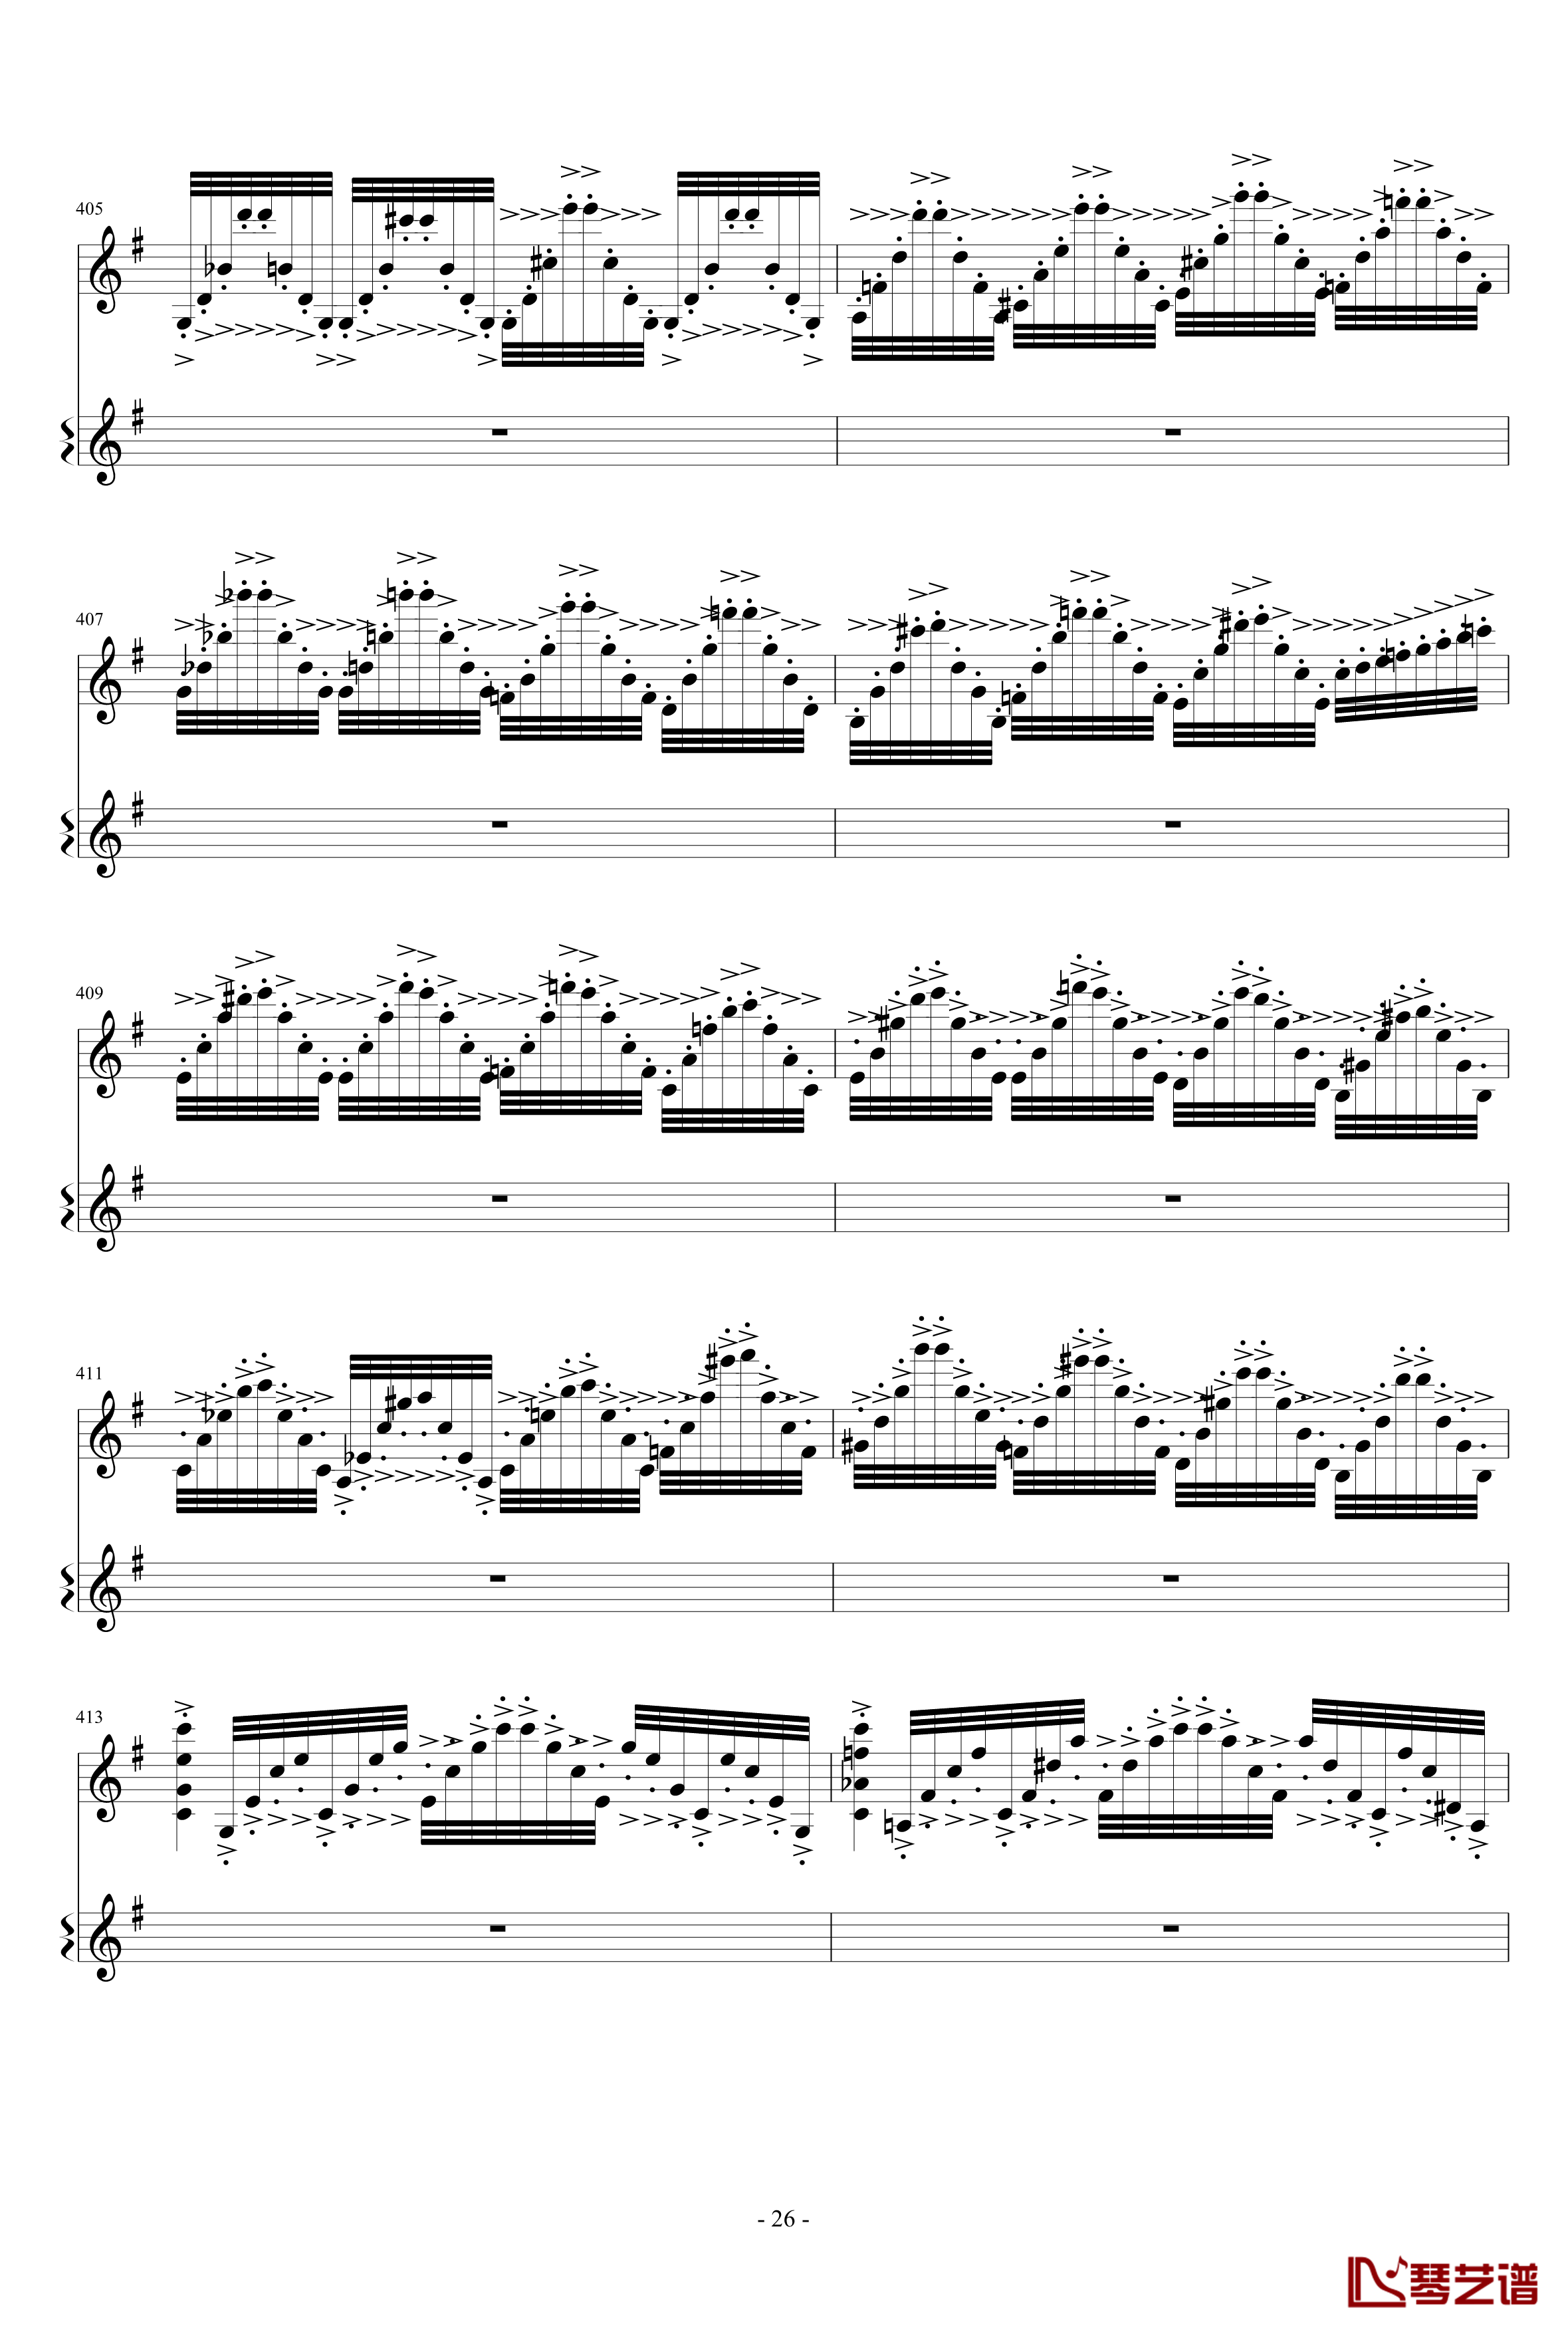 意大利国歌变奏曲钢琴谱-只修改了一个音-DXF26